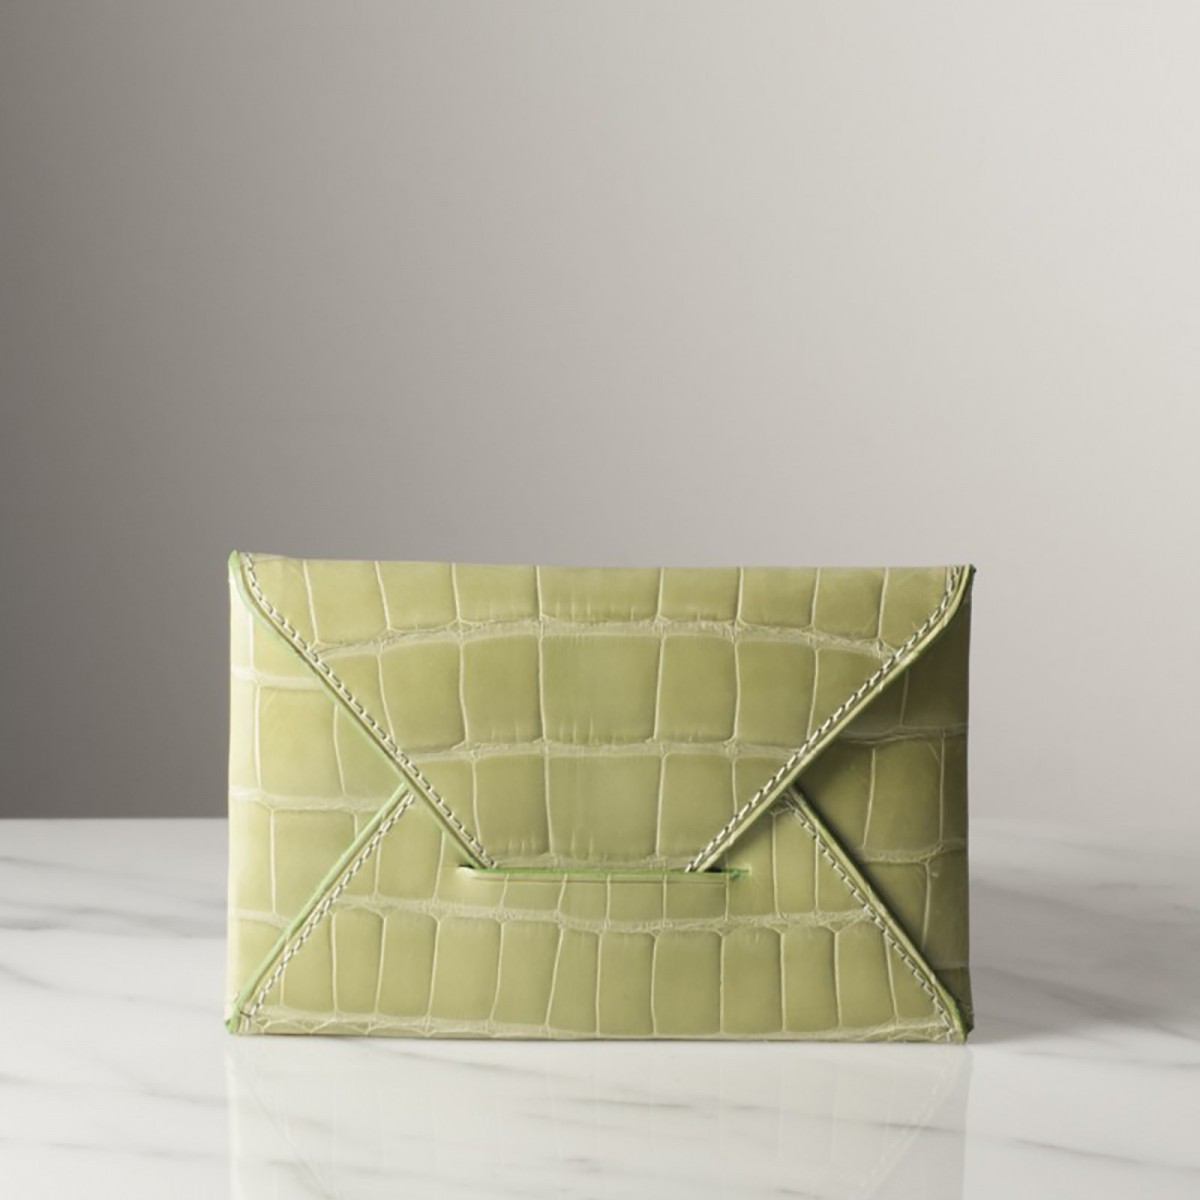 PRUNE CROCODILE - Crocodile envelope wallet, handmade in France